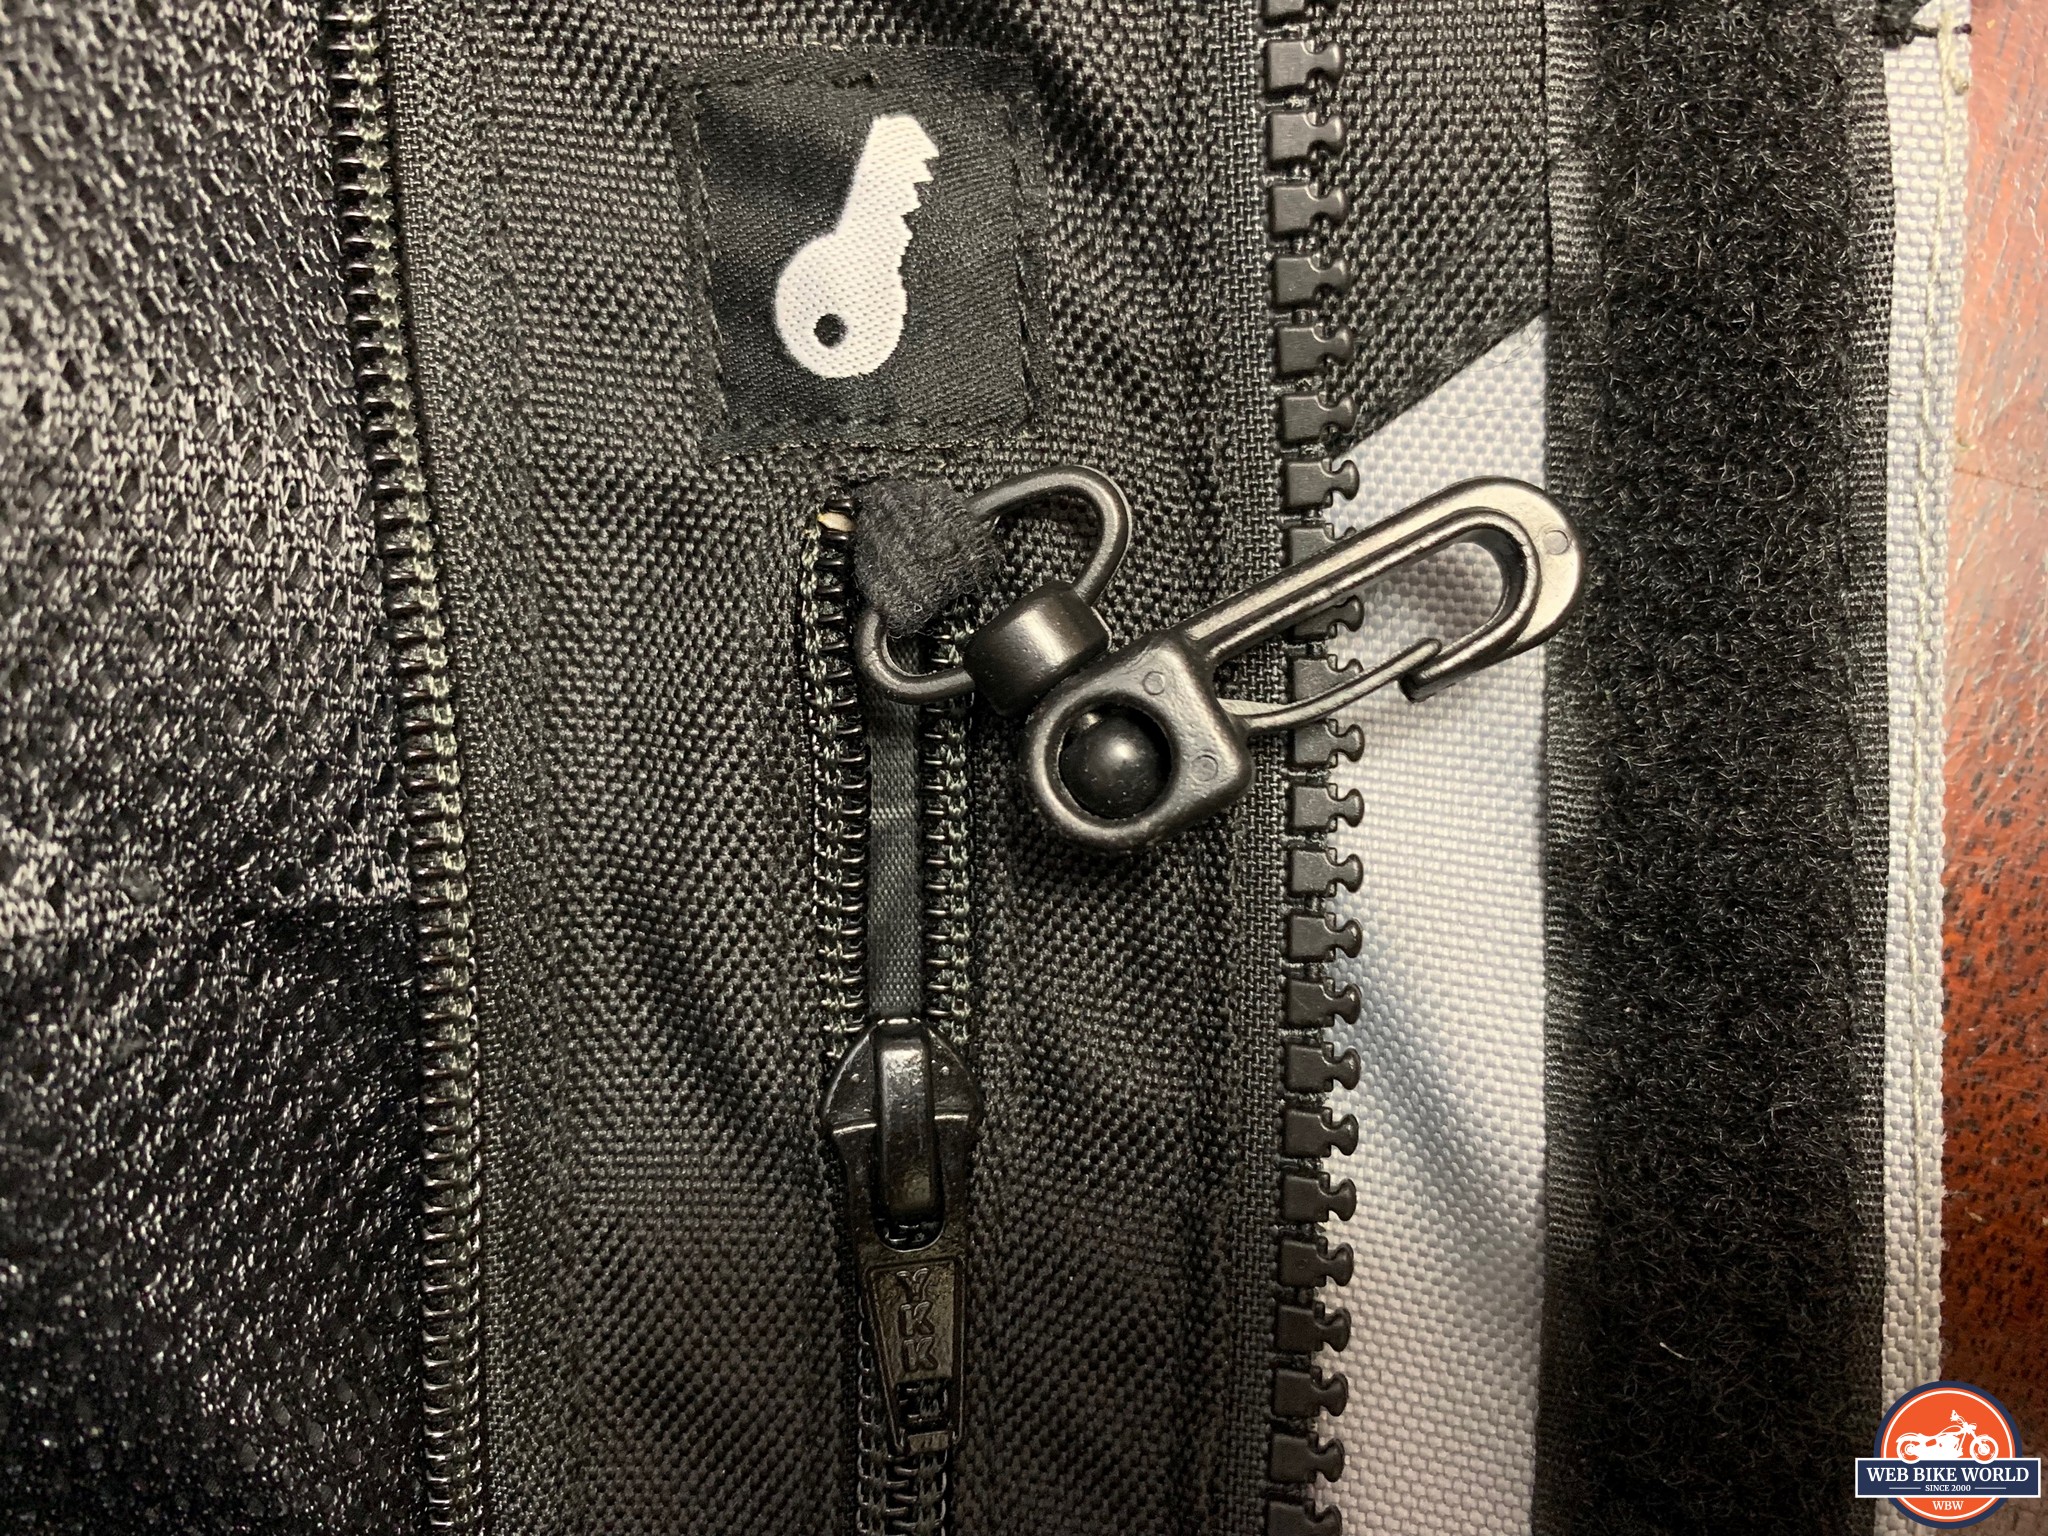 Closeup of zipper pocket and key clip